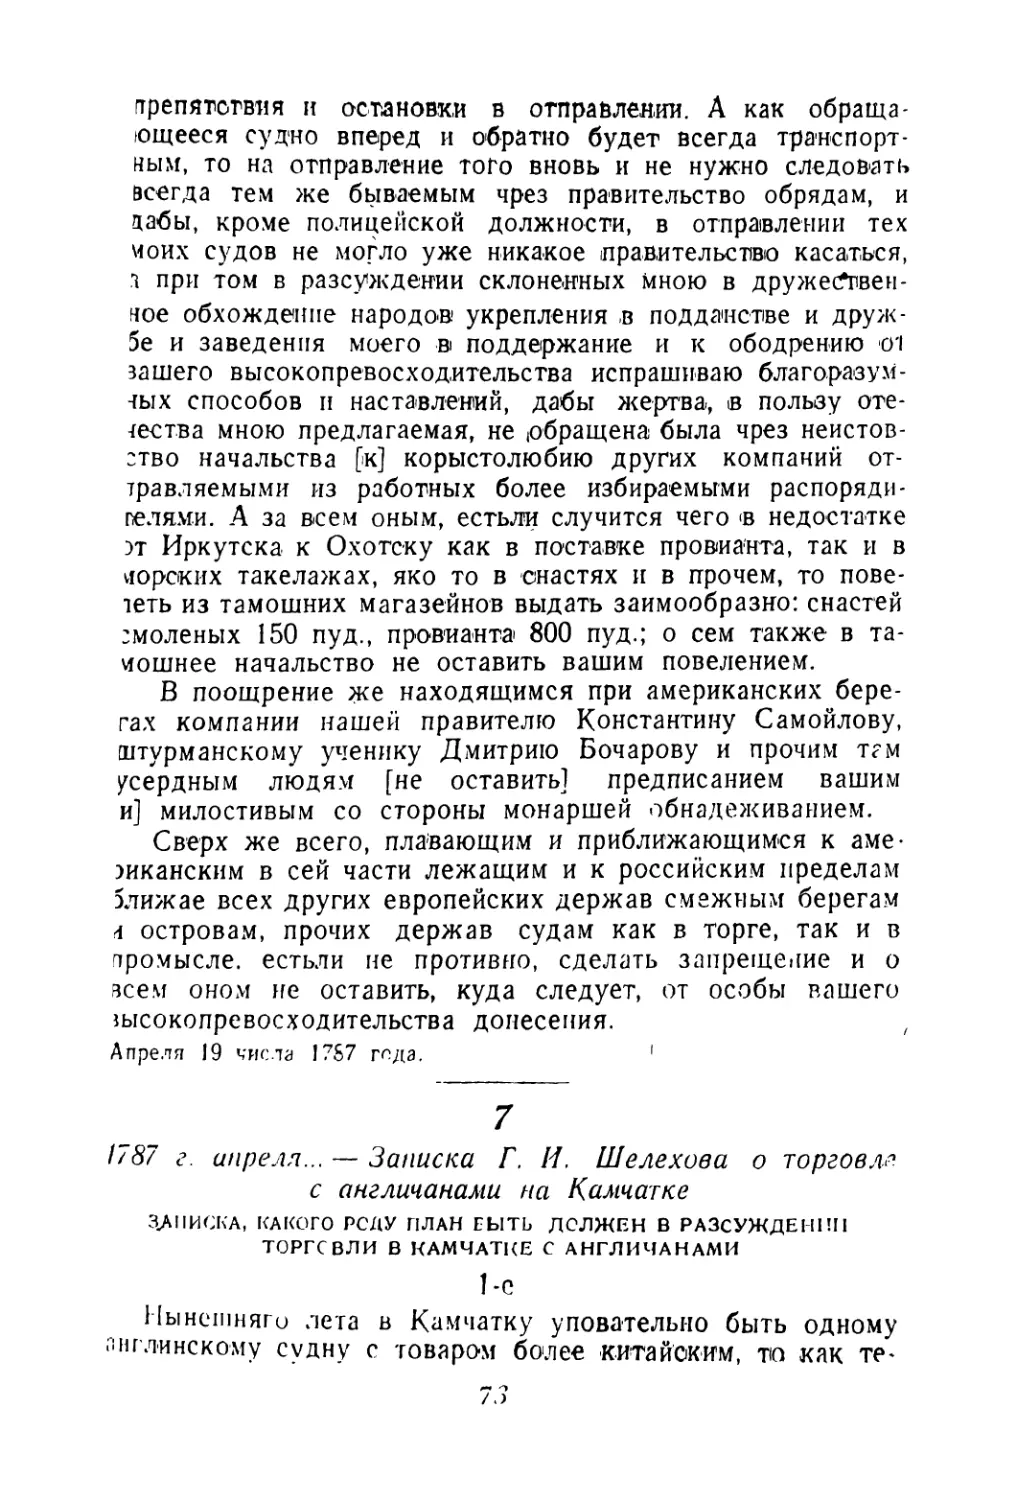 7. 1787 г. апреля... — Записка Г. И. Шелехова о торговле с англичанами на Камчатке